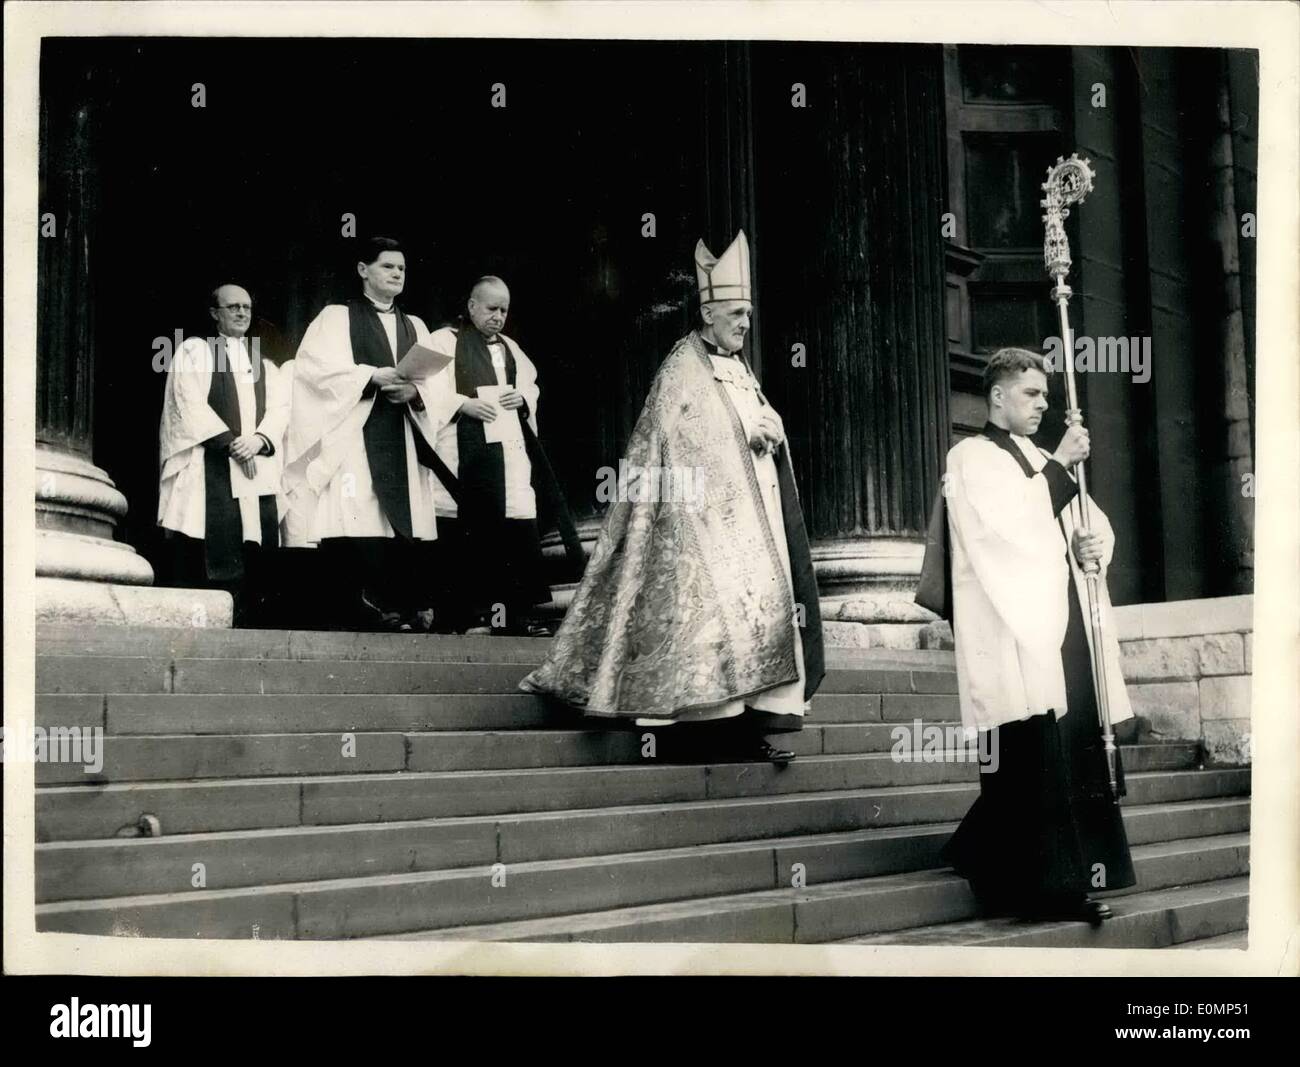 2. Februar 1956 - neuer Bischof von London inthronisiert in St. Pauls Kathedrale In Prozession: The RT. Rev. Heity Colville Moitgomery Campbell war an diesem Nachmittag, als die 126. inthronisiert. Bischof von London. Die Zeremonie wurde durchgeführt von der Dekan von St. Pauls - die sehr Reverend w.r. Matthews und der Archdeaces von Canterbury - Fr. A. Sargent und wurde durch den Oberbürgermeister von London - Sheriffs und Schöffen- und Bürgermeister von der London Boroughs usw. besucht. Foto zeigt der neue Bischof von London - in einer Prozession mit anderen Würdenträgern - während der Zeremonien in der St. Pauls Kathedrale heute Nachmittag. Stockfoto